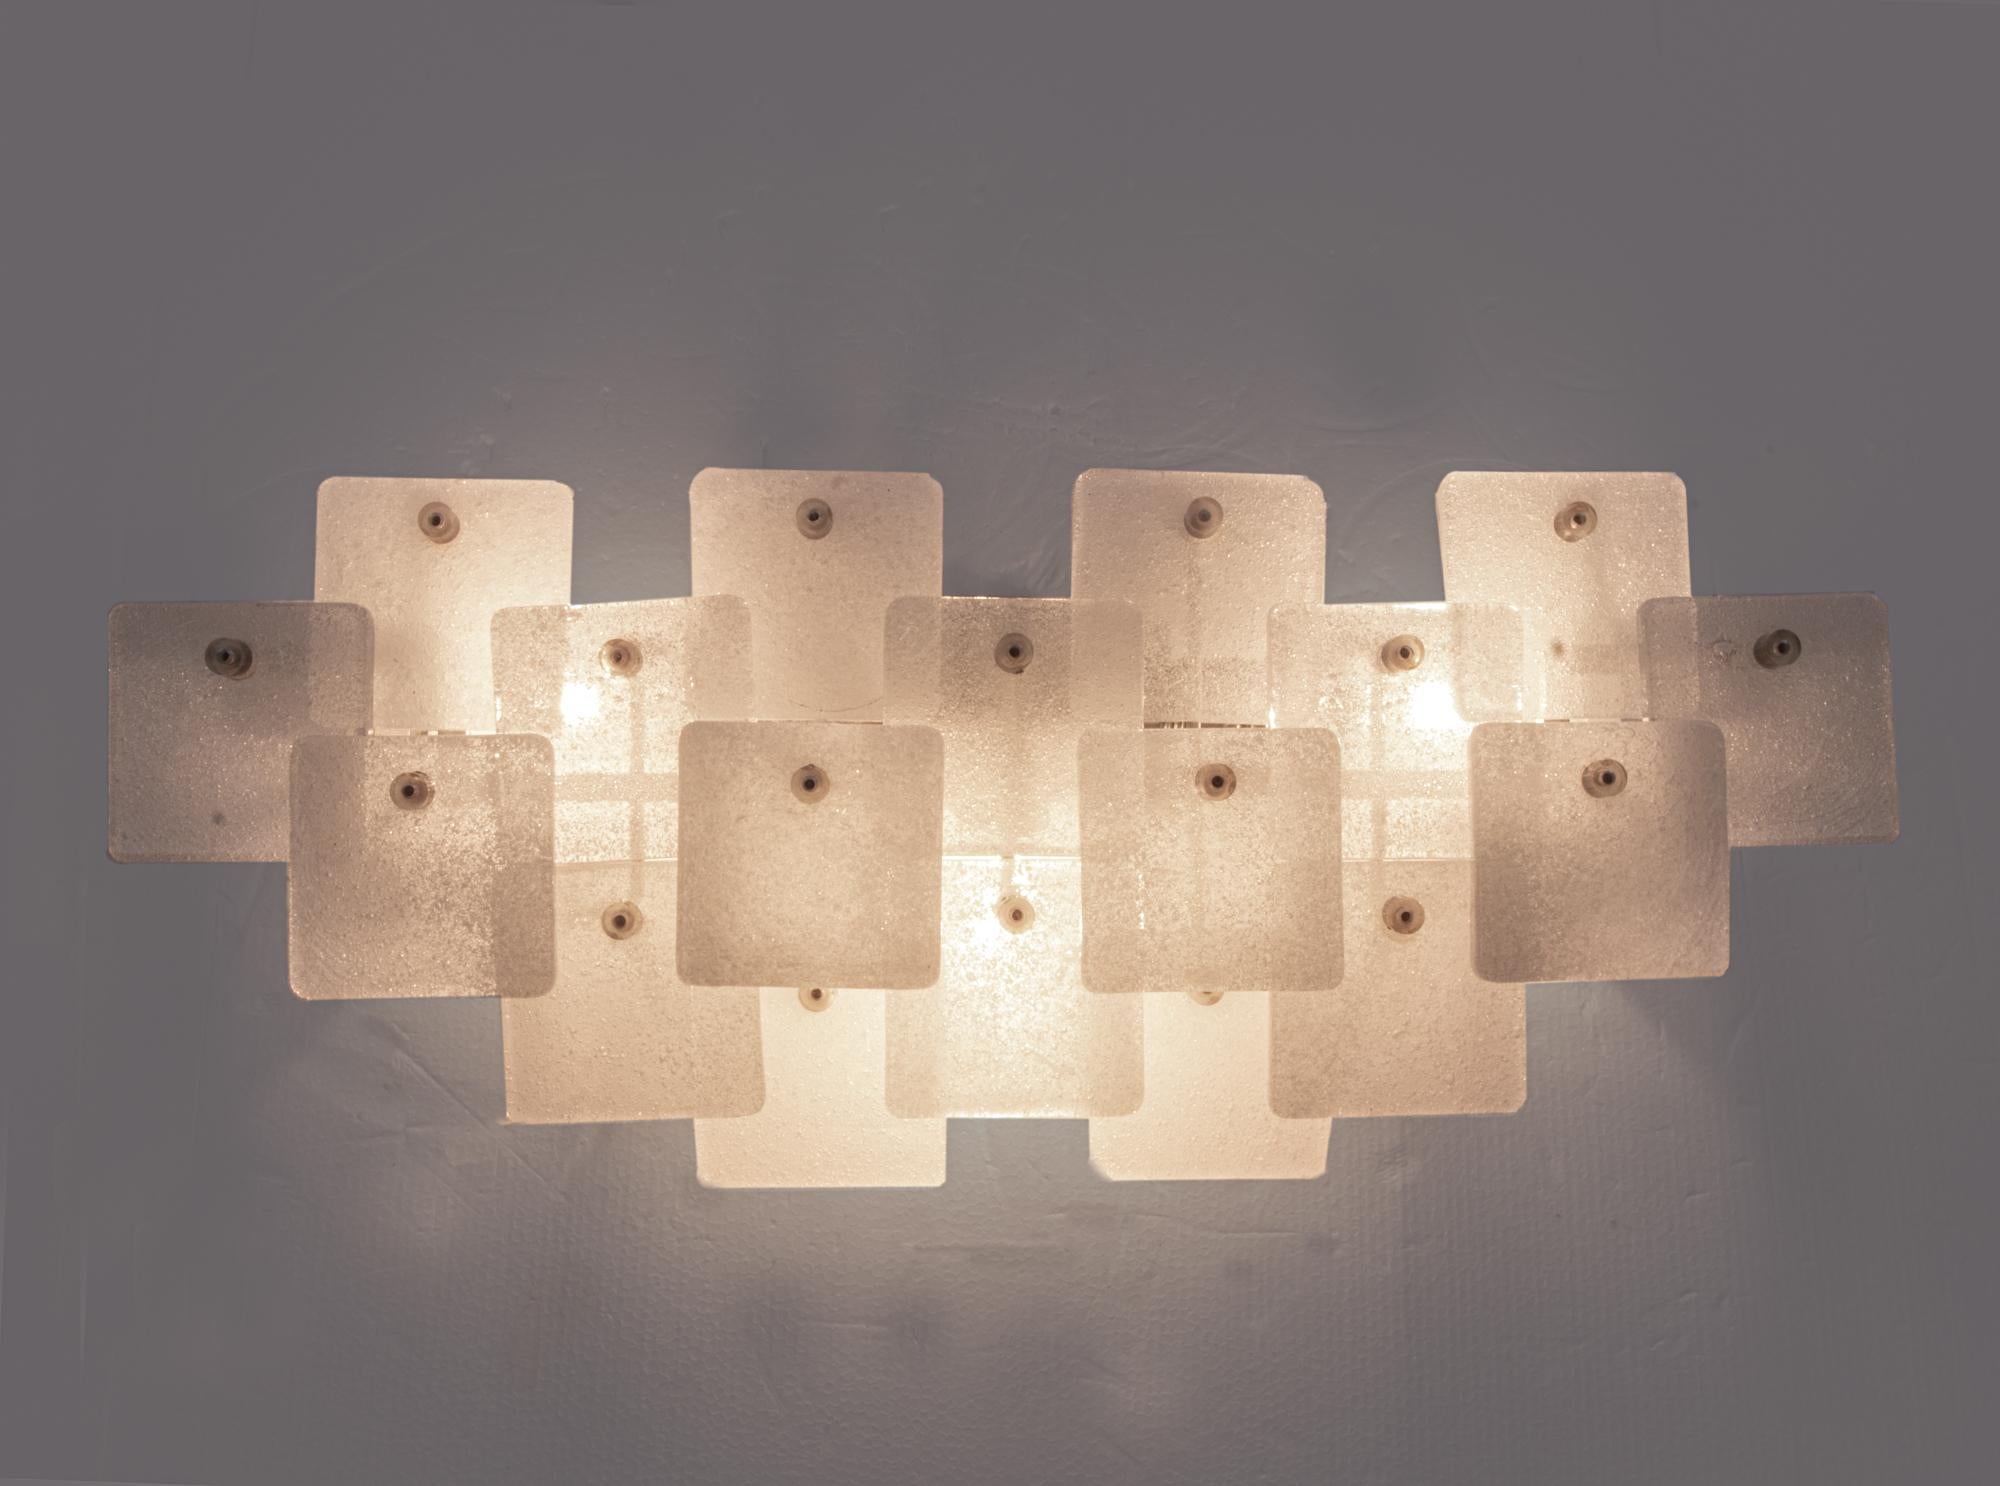 Elegante Wandleuchte aus dickem, geschäumtem Murano-Glas, montiert auf einem weiß lackierten Nickelrahmen. Der Wandleuchter ist im Kalmar-Katalog von 1970 dokumentiert. Die achtzehn quadratisch geformten und geschäumten Murano-Glaselemente sind mit